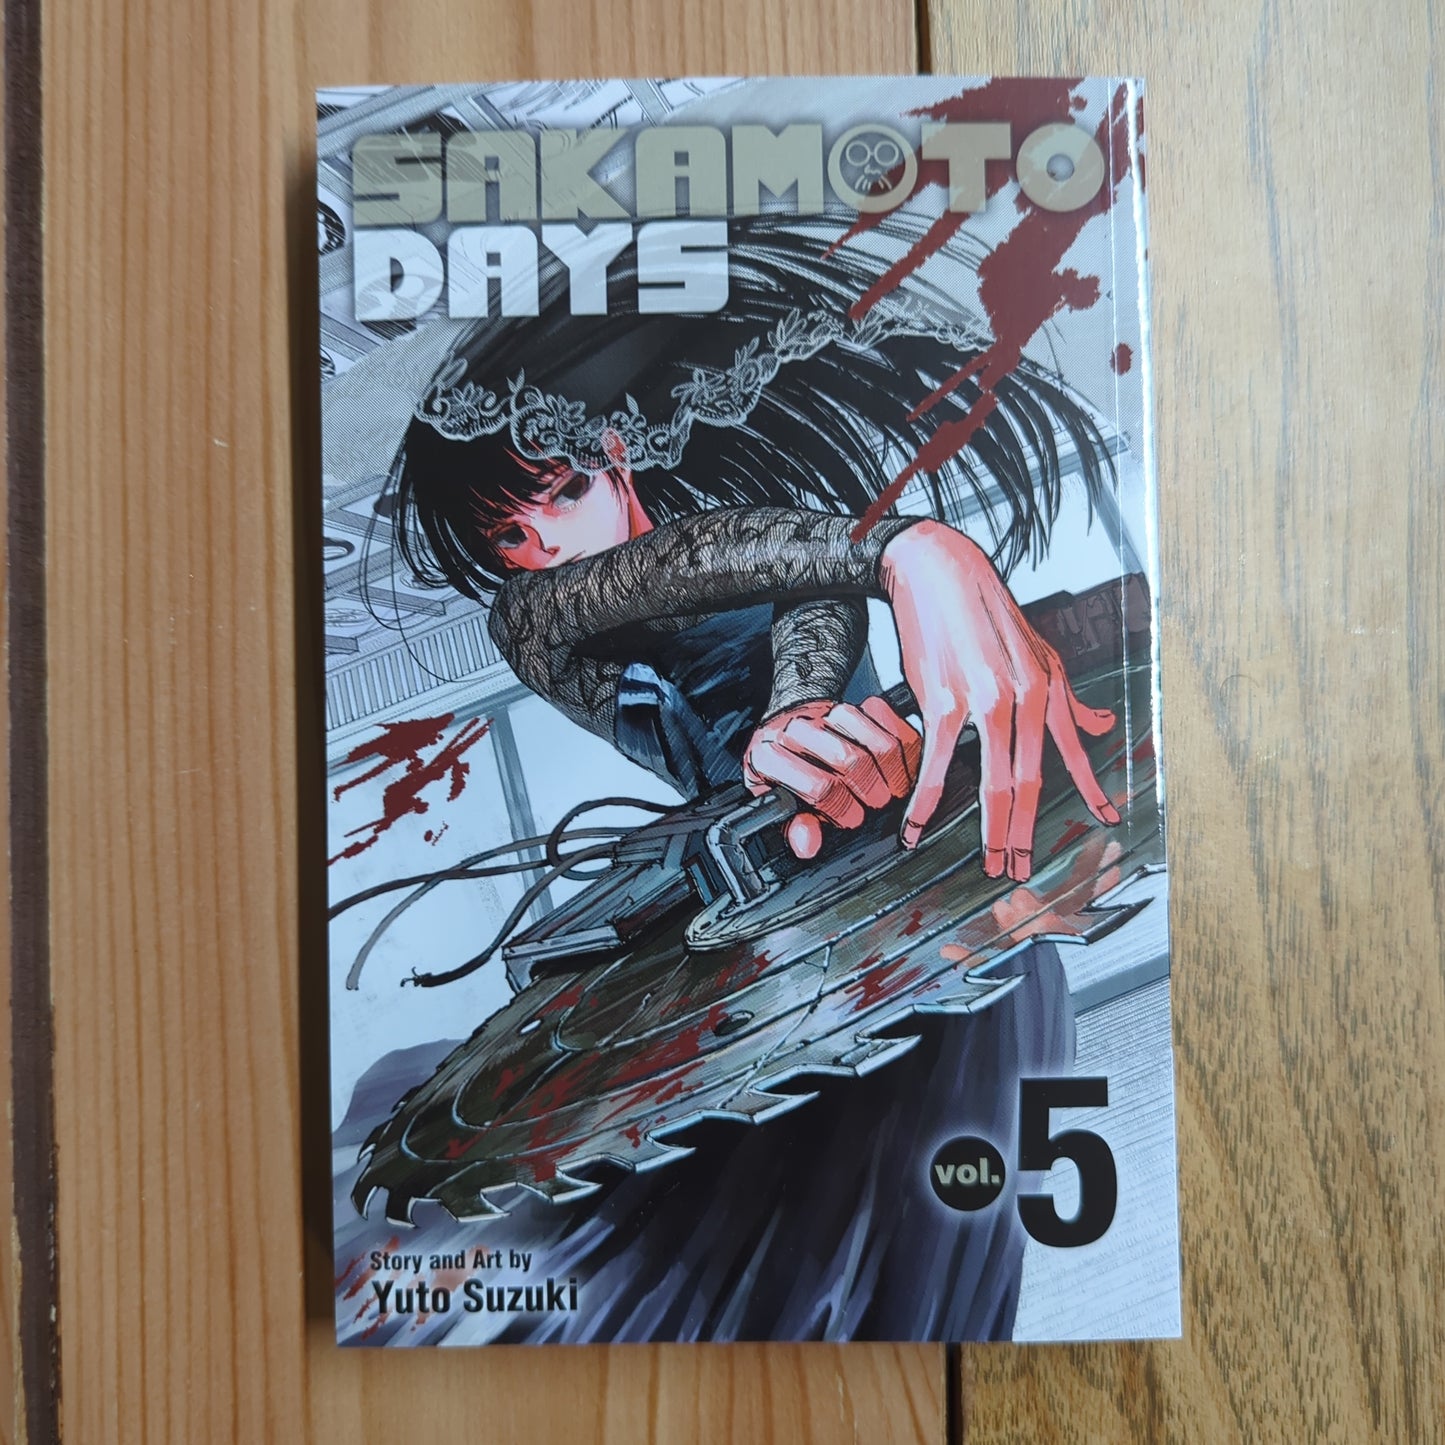 Sakamoto Days Vol 5